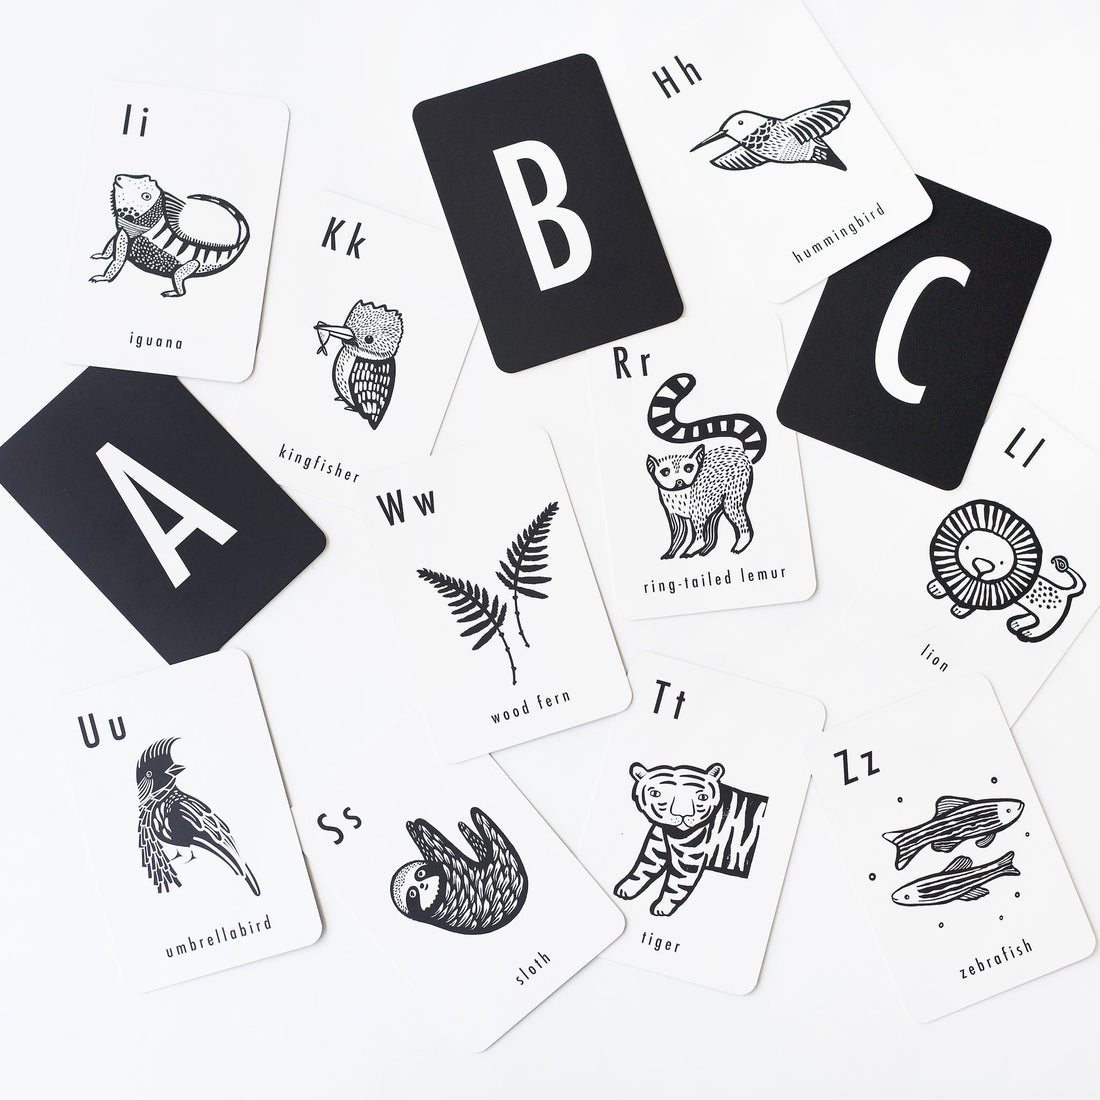 Jungle Alphabet Cards